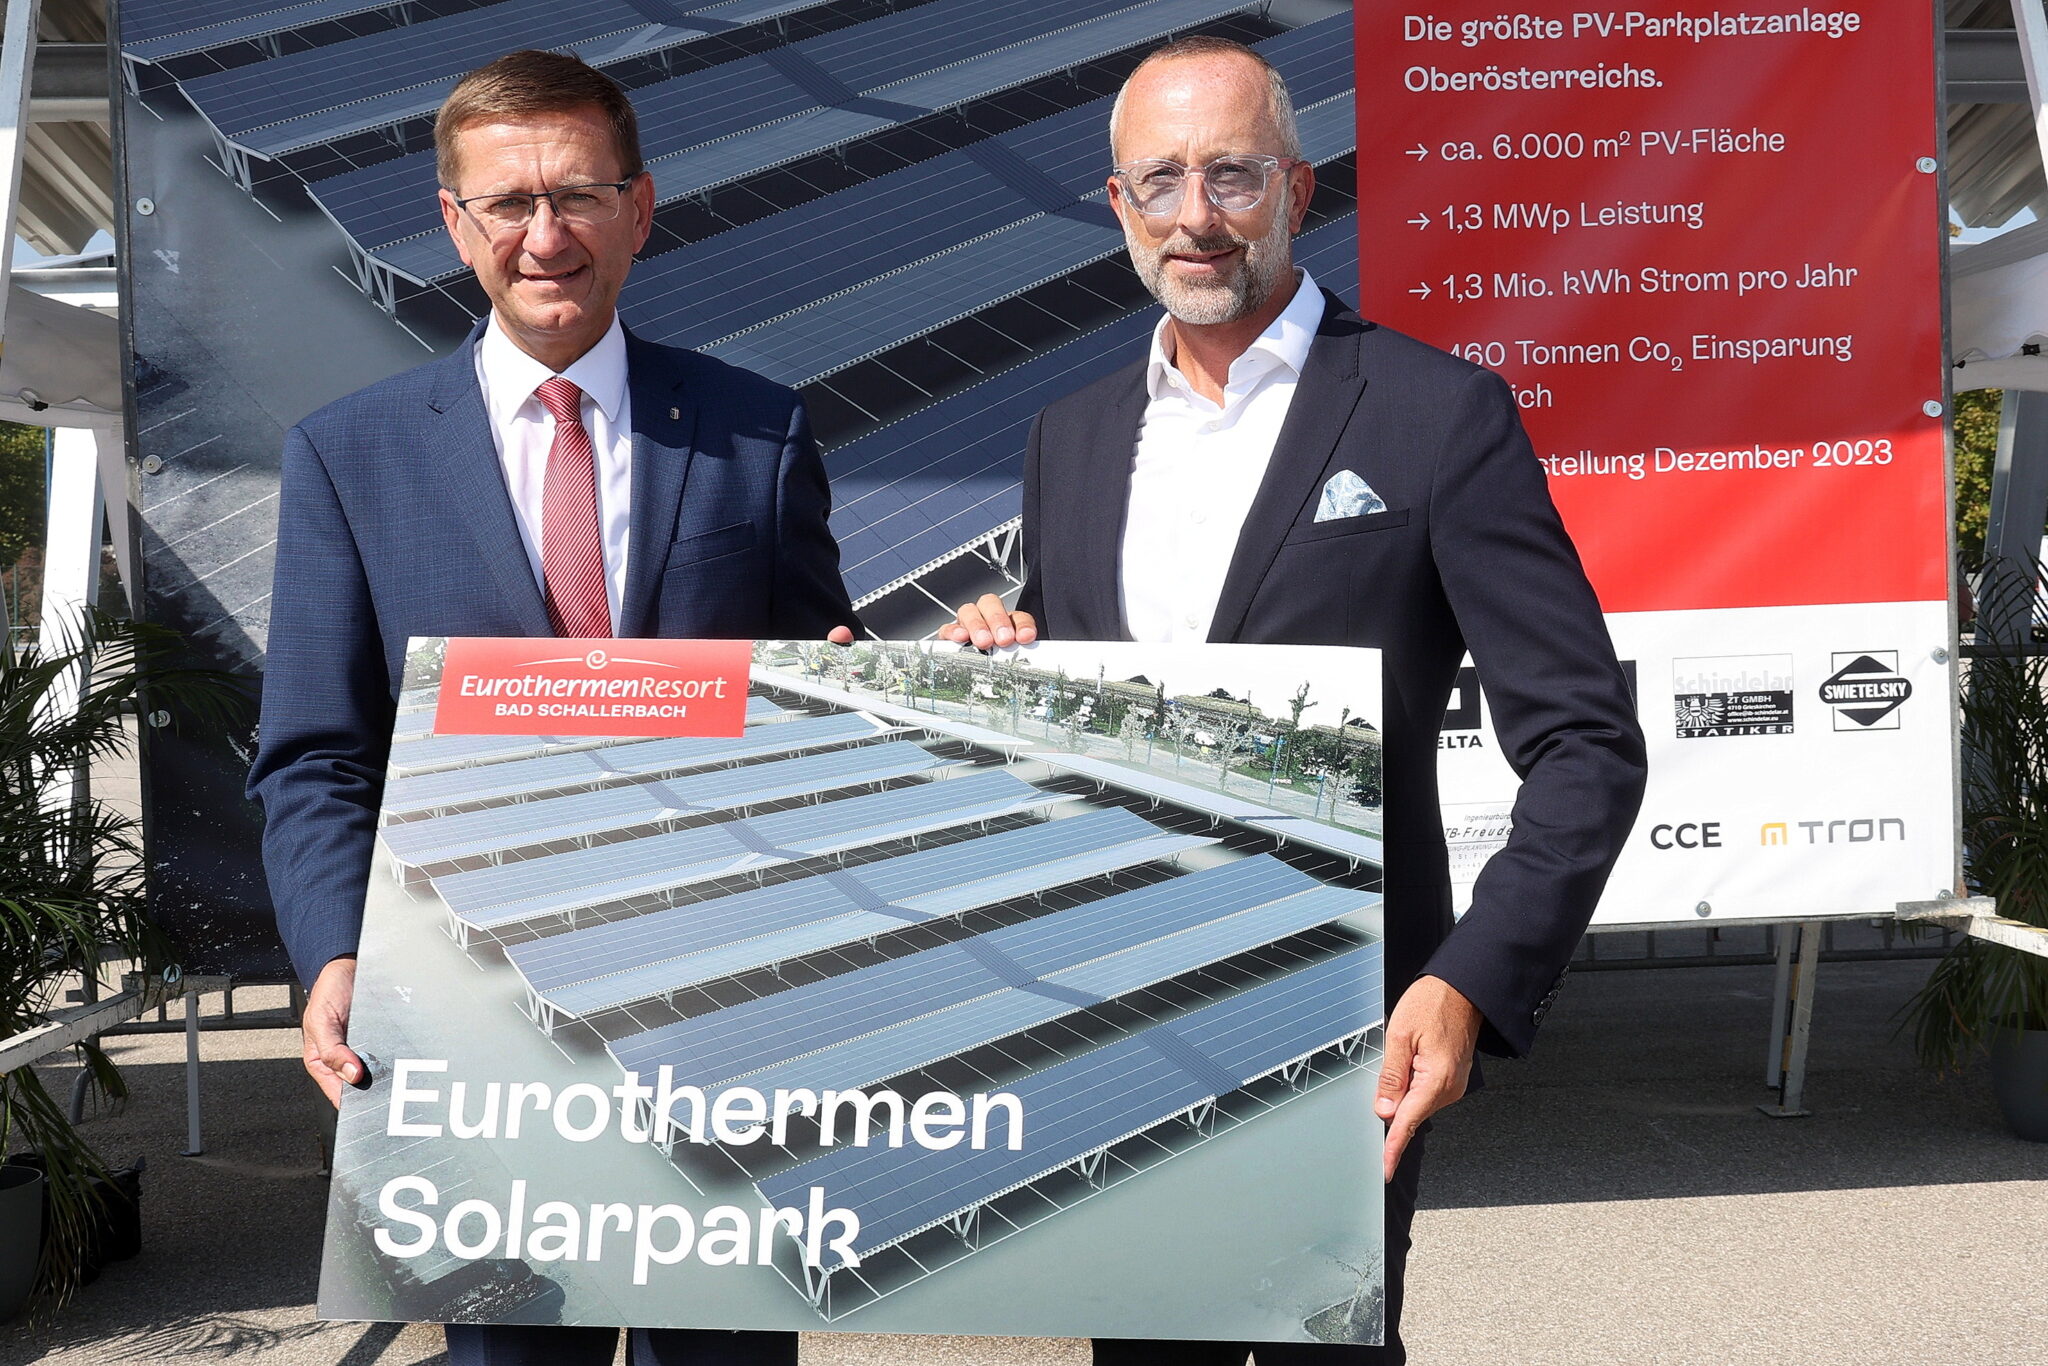 Eurothermen Baustart Bild 1 scaled - Die Eurothermen errichten am Standort Bad Schallerbach die größte Parkplatz Photovoltaik-Anlage Oberösterreichs